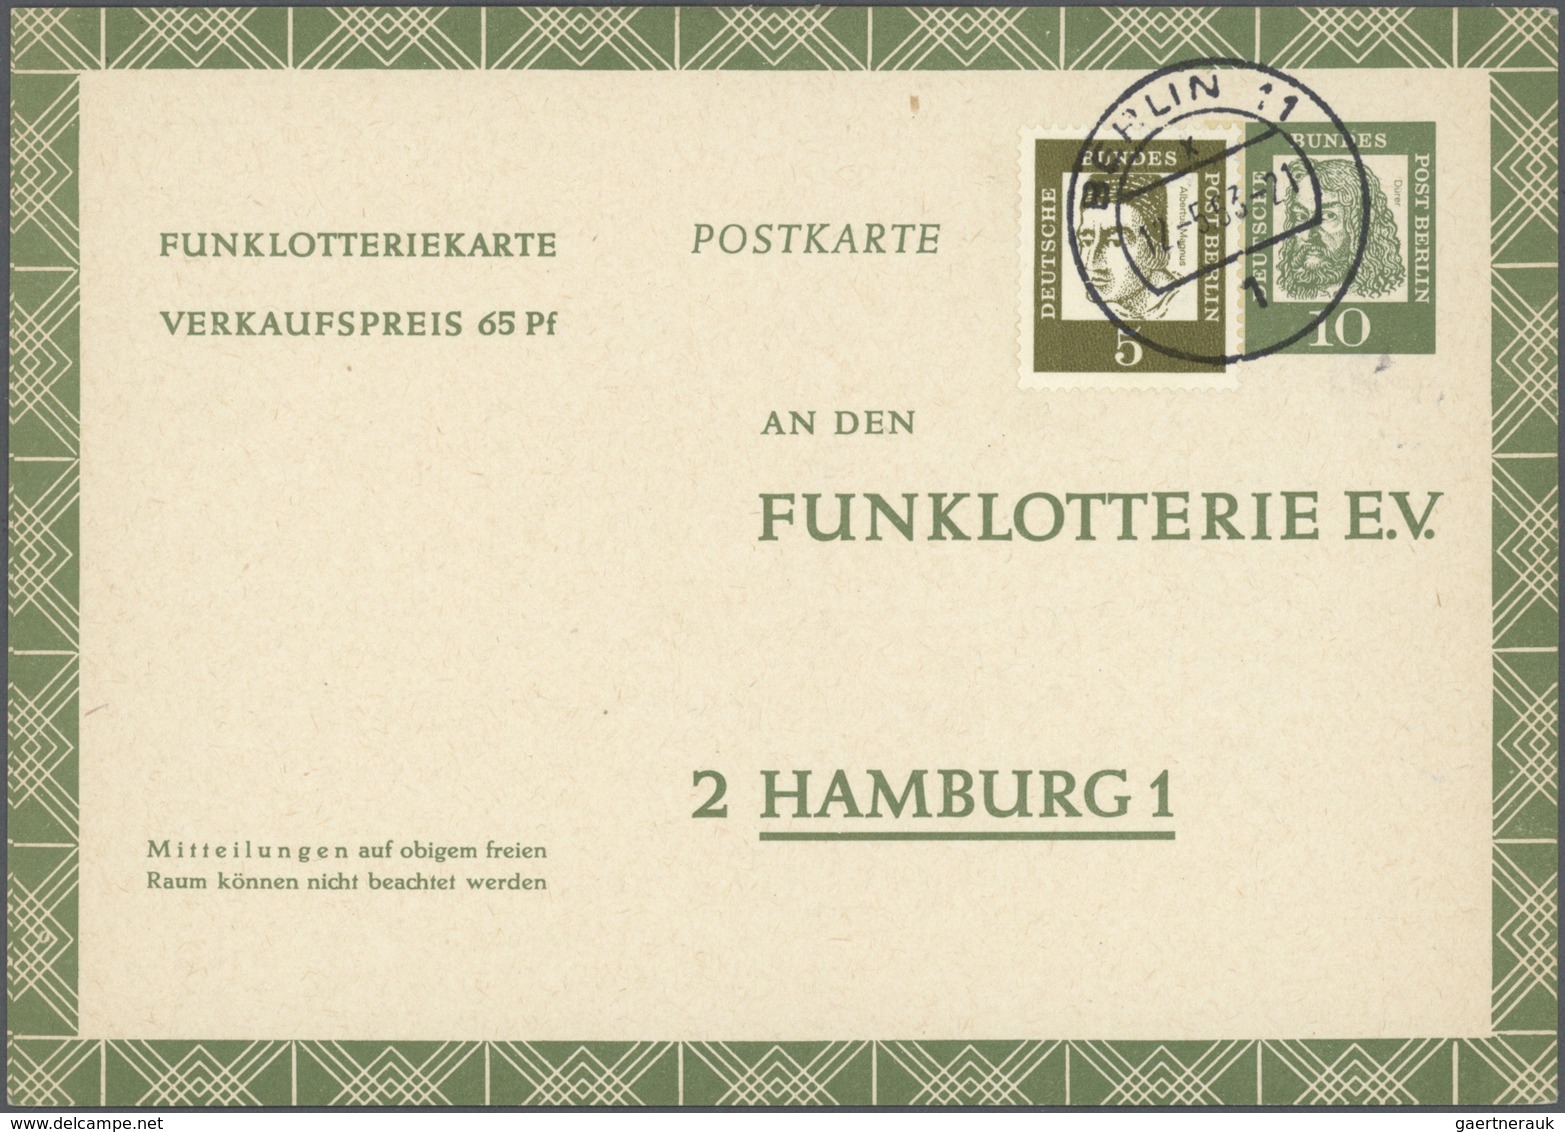 32552 Berlin - Ganzsachen: ab 1949, Partie von ca. 200 Ganzsachenkarten/-umschlägen ab Währungsgeschädigte